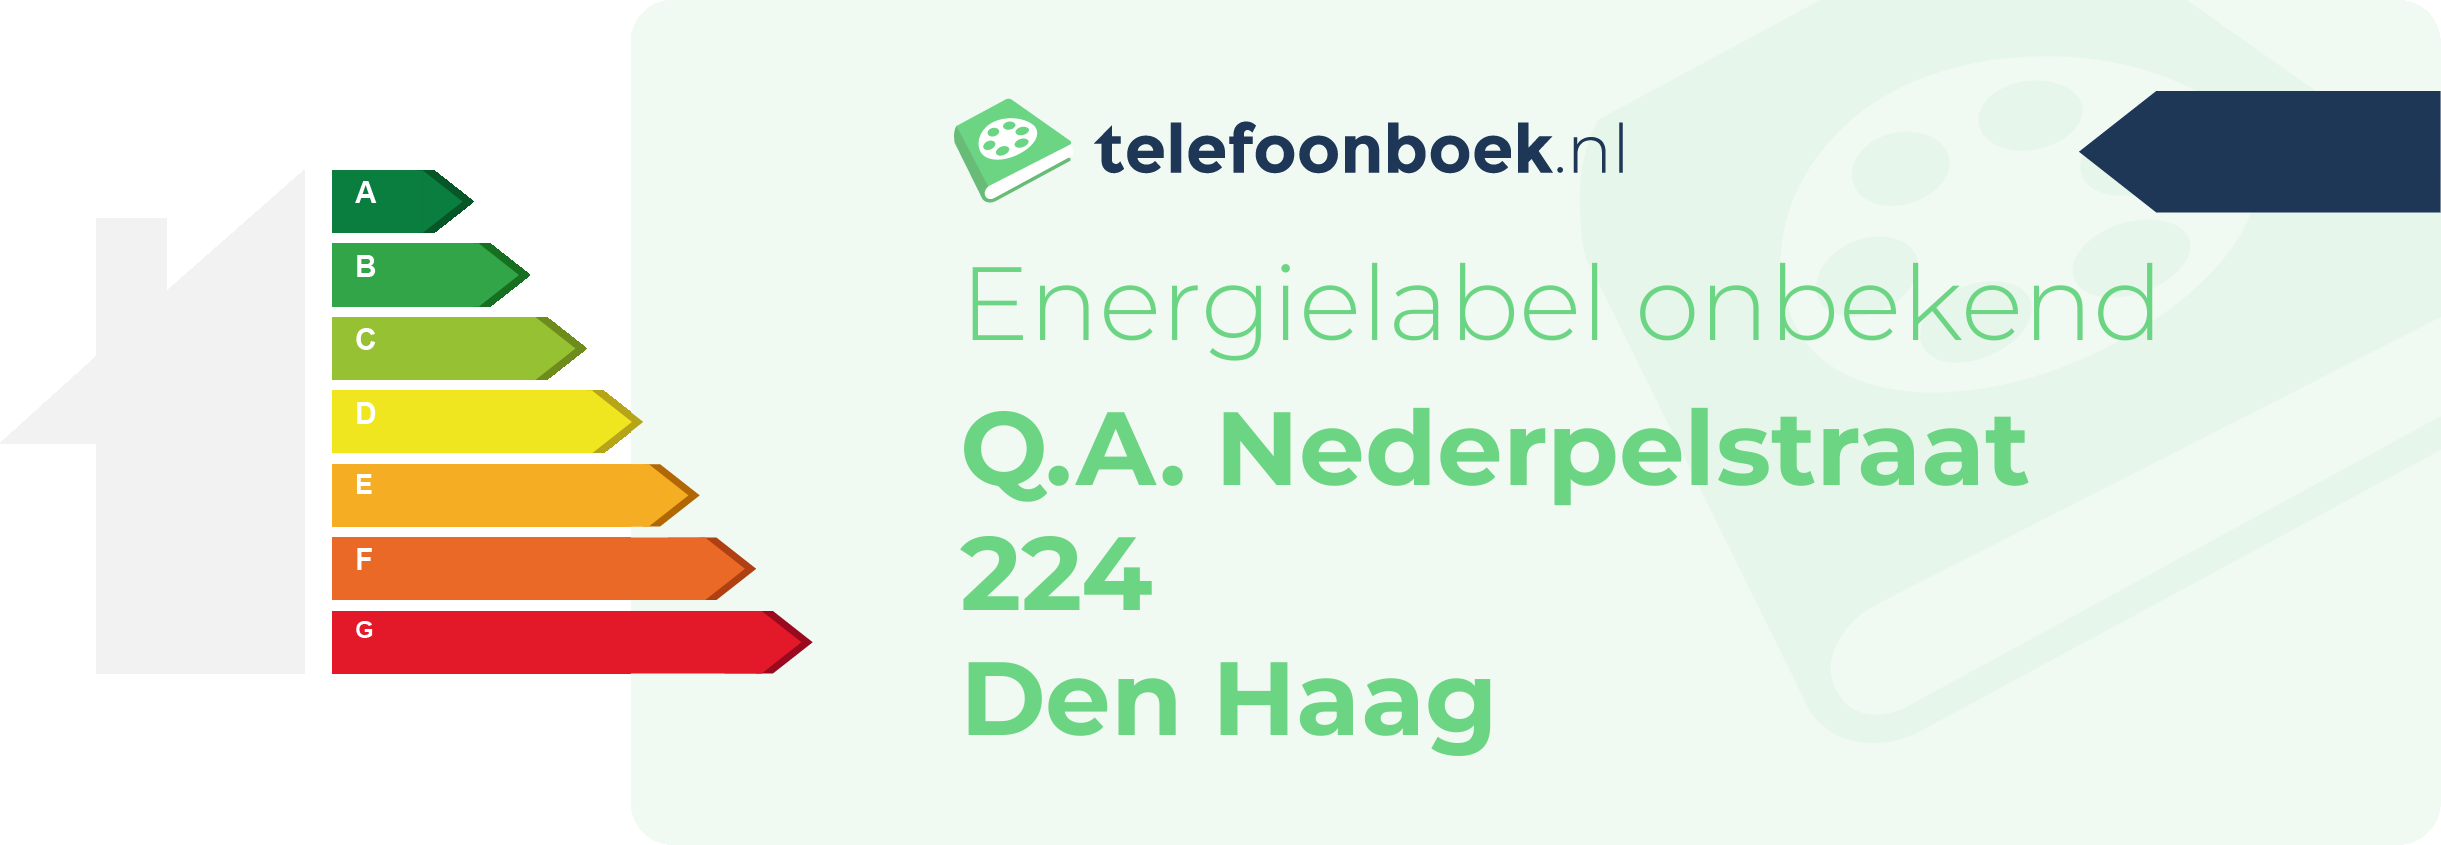 Energielabel Q.A. Nederpelstraat 224 Den Haag